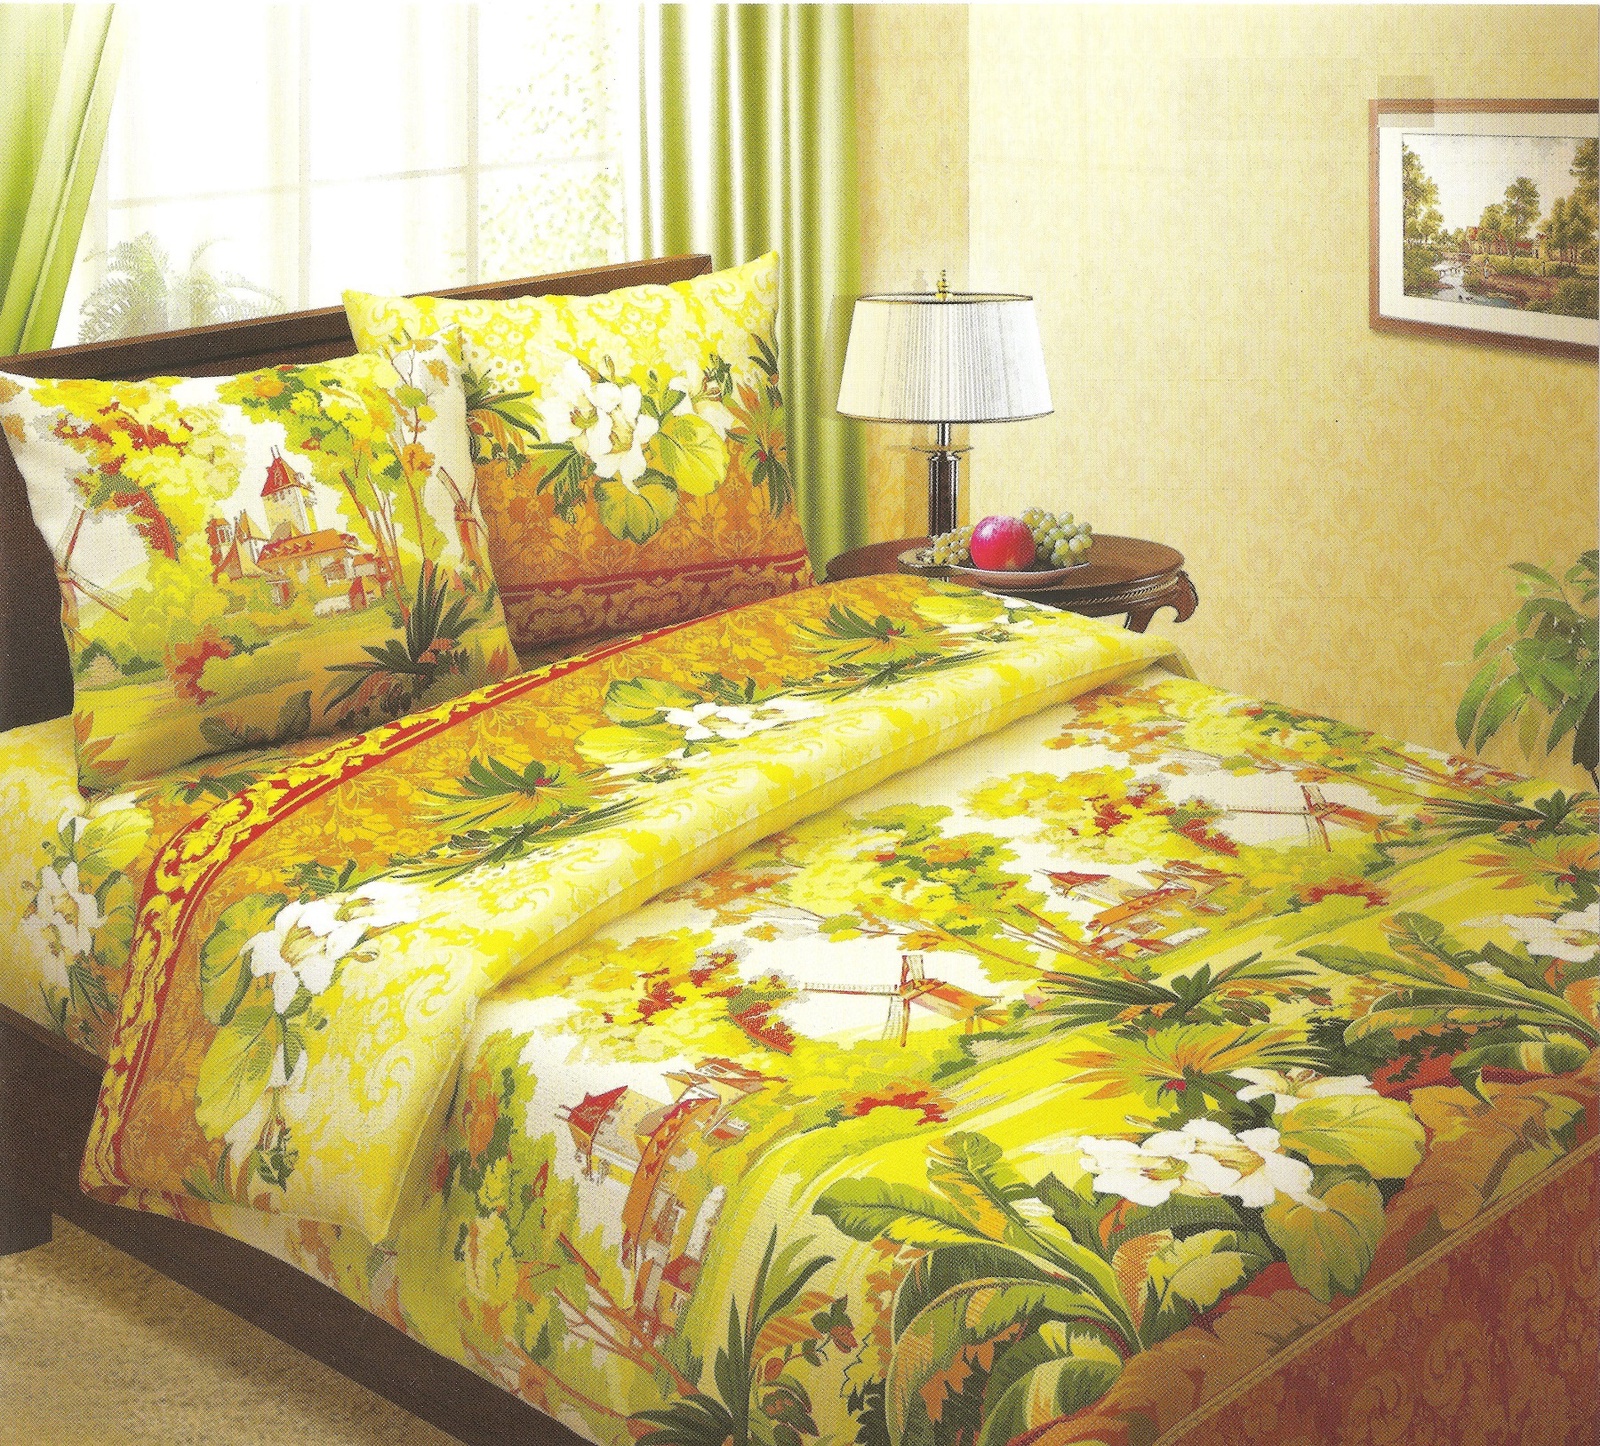 фото Комплект постельного белья BegAl бязь, БК003-516-1, желтый, коричневый, зеленый